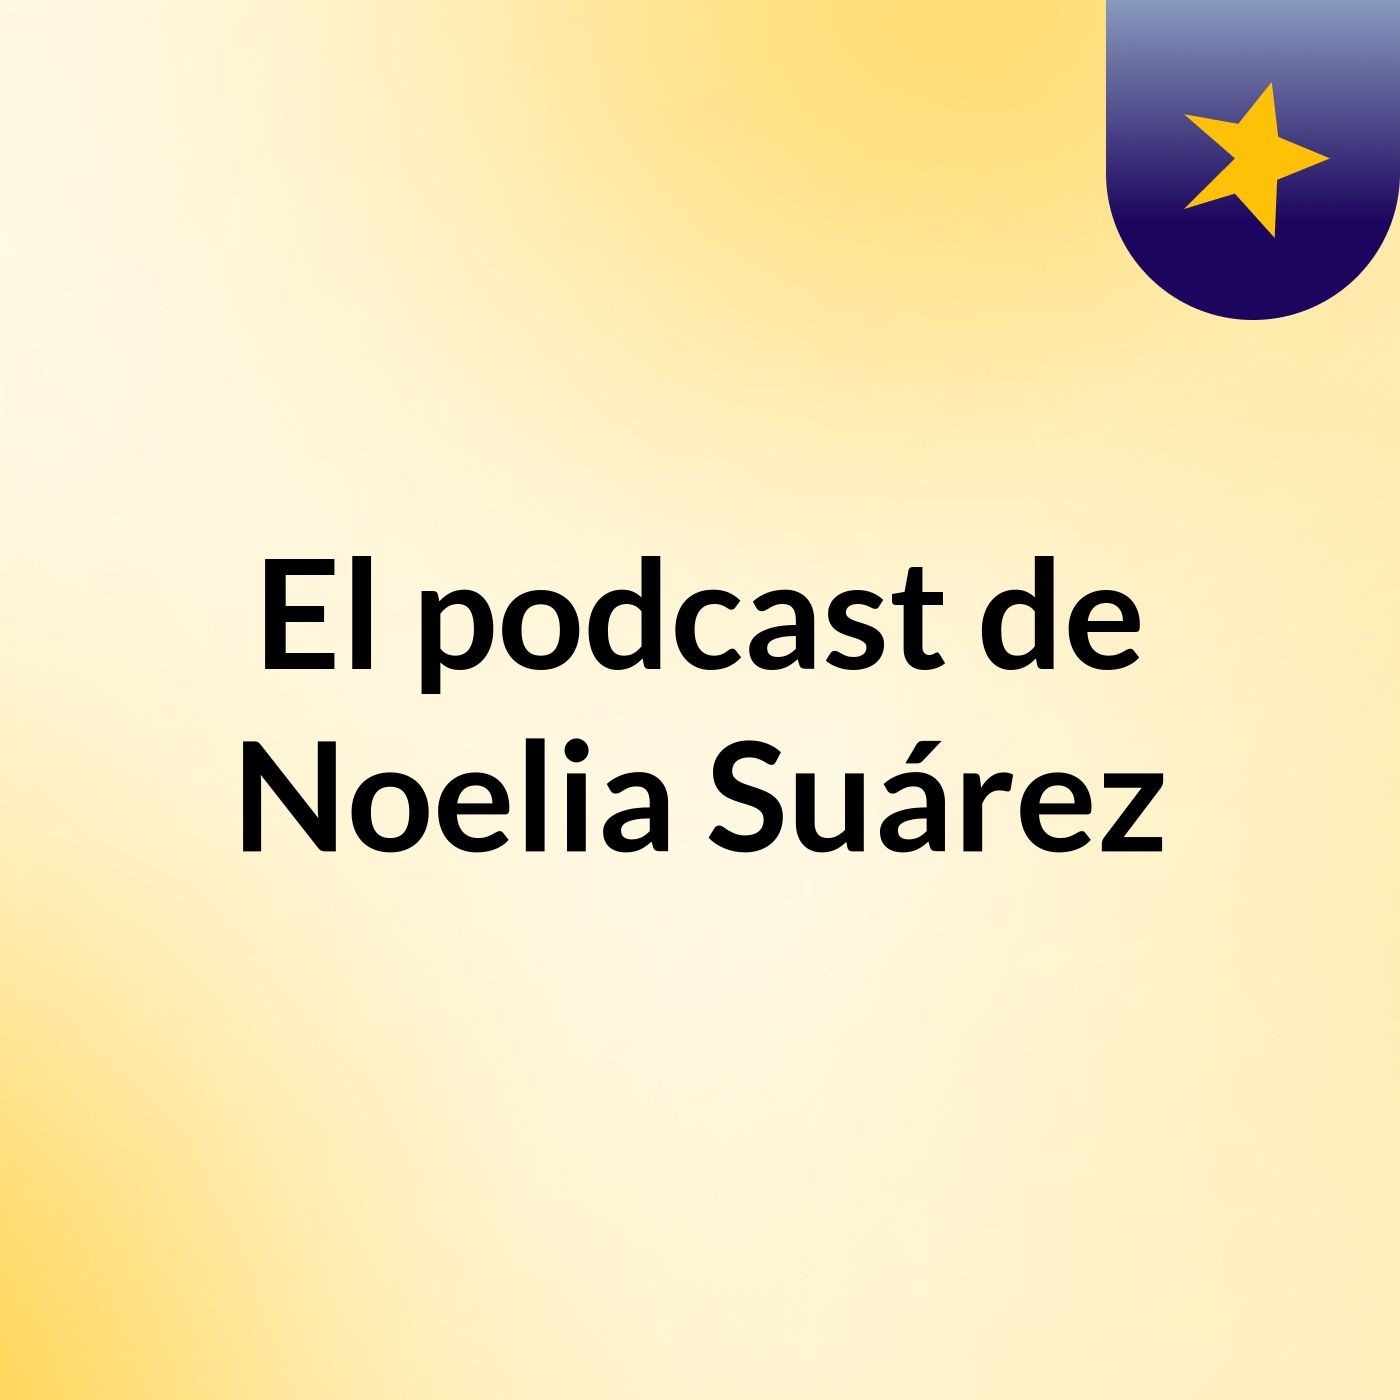 El podcast de Noelia Suárez